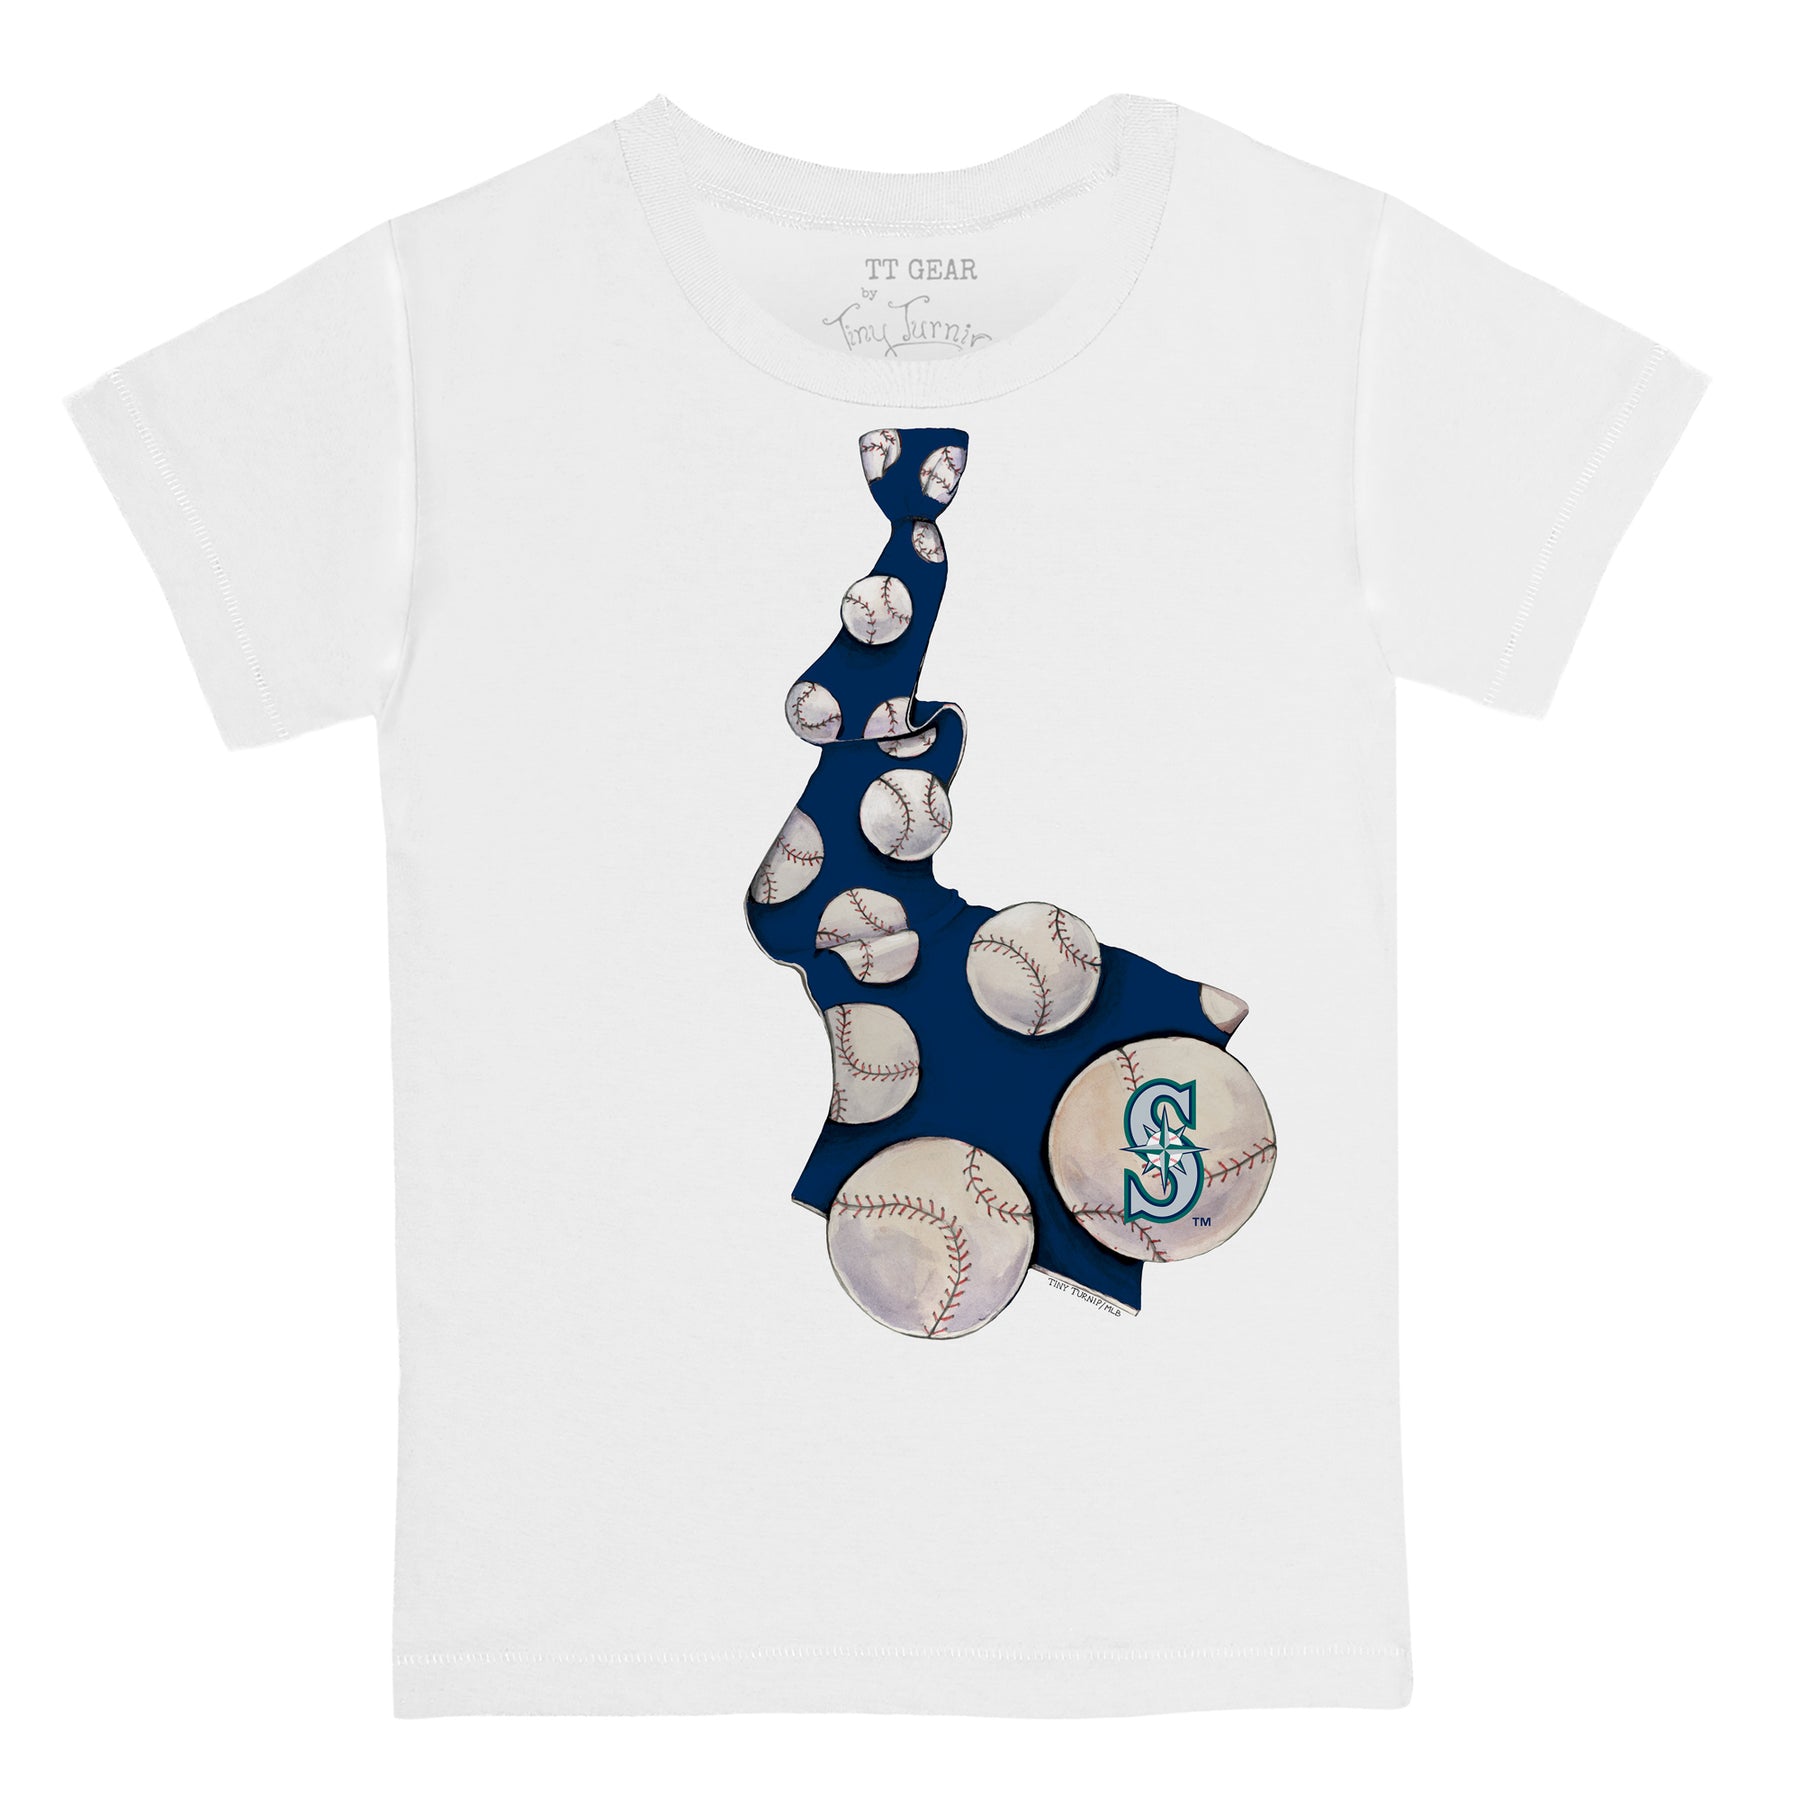 Tiny Turnip Seattle Mariners Slugger Tee Shirt Women's Small / White